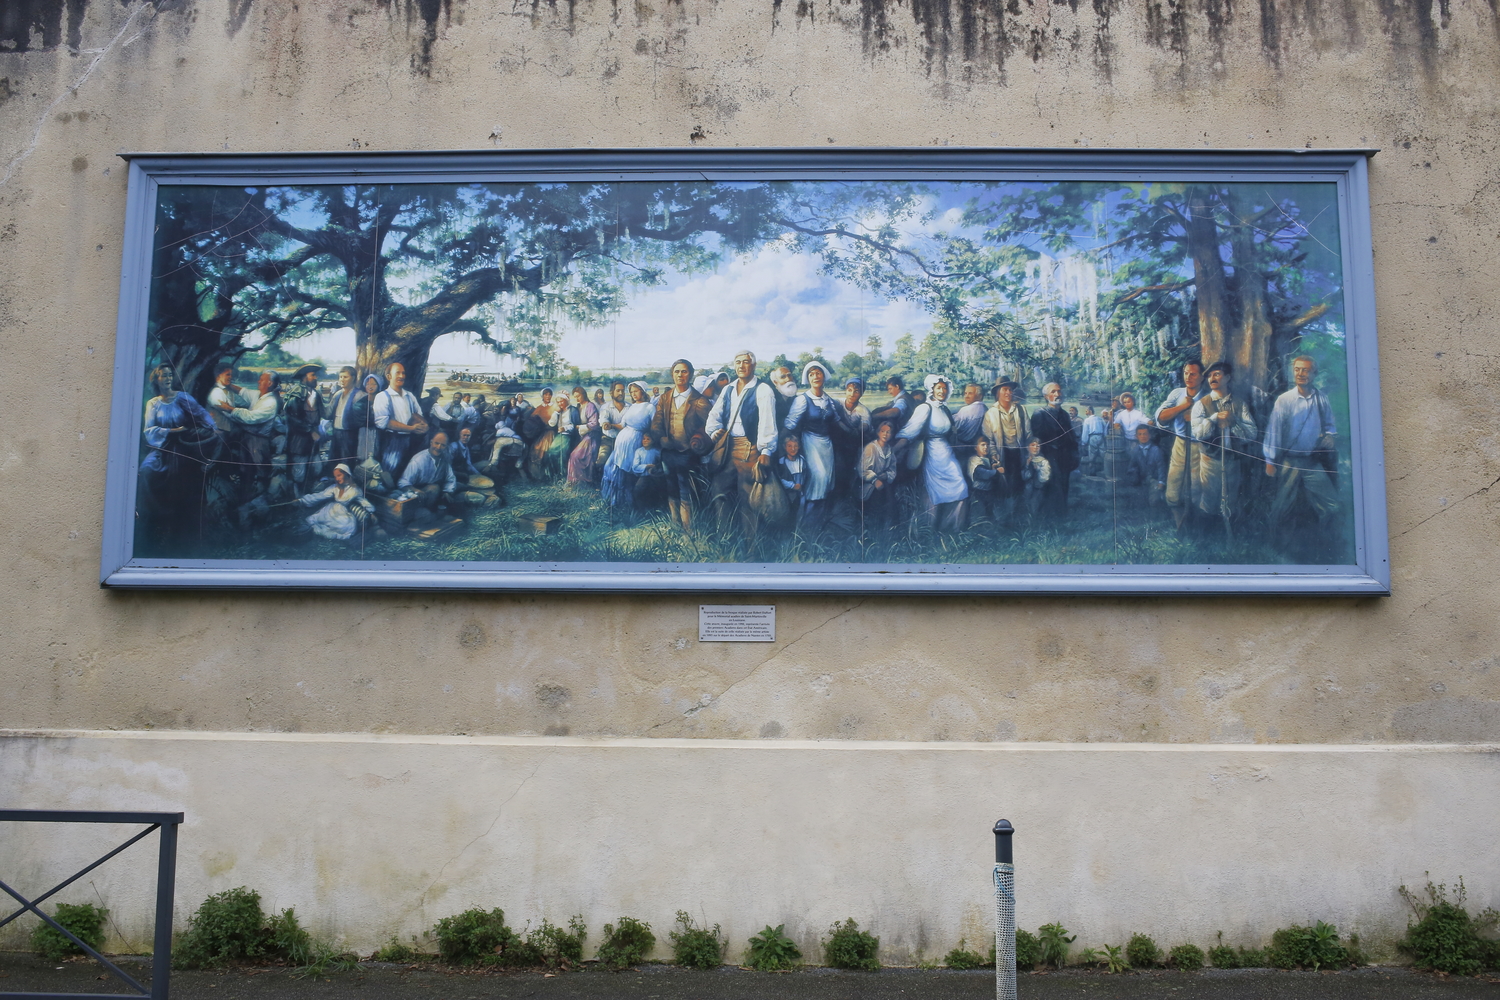 Reproduction photographiée de la fresque peinte par Robert DAFFORD à Saint-Martinville en Louisiane, qui représente les Acadiens qui arrivent en Louisiane © Globe Reporters